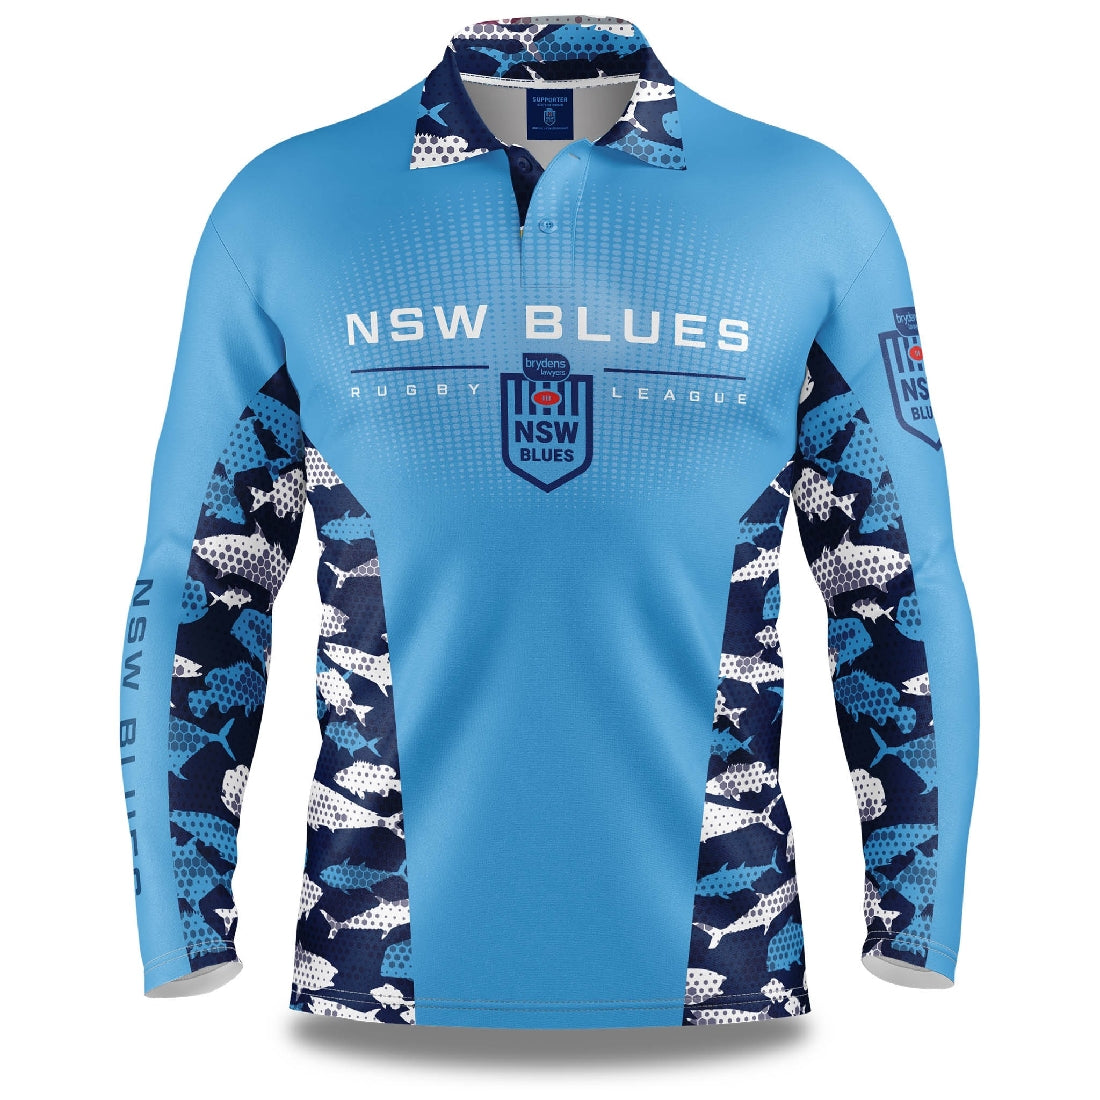 NSW Blues Fishing Shirt